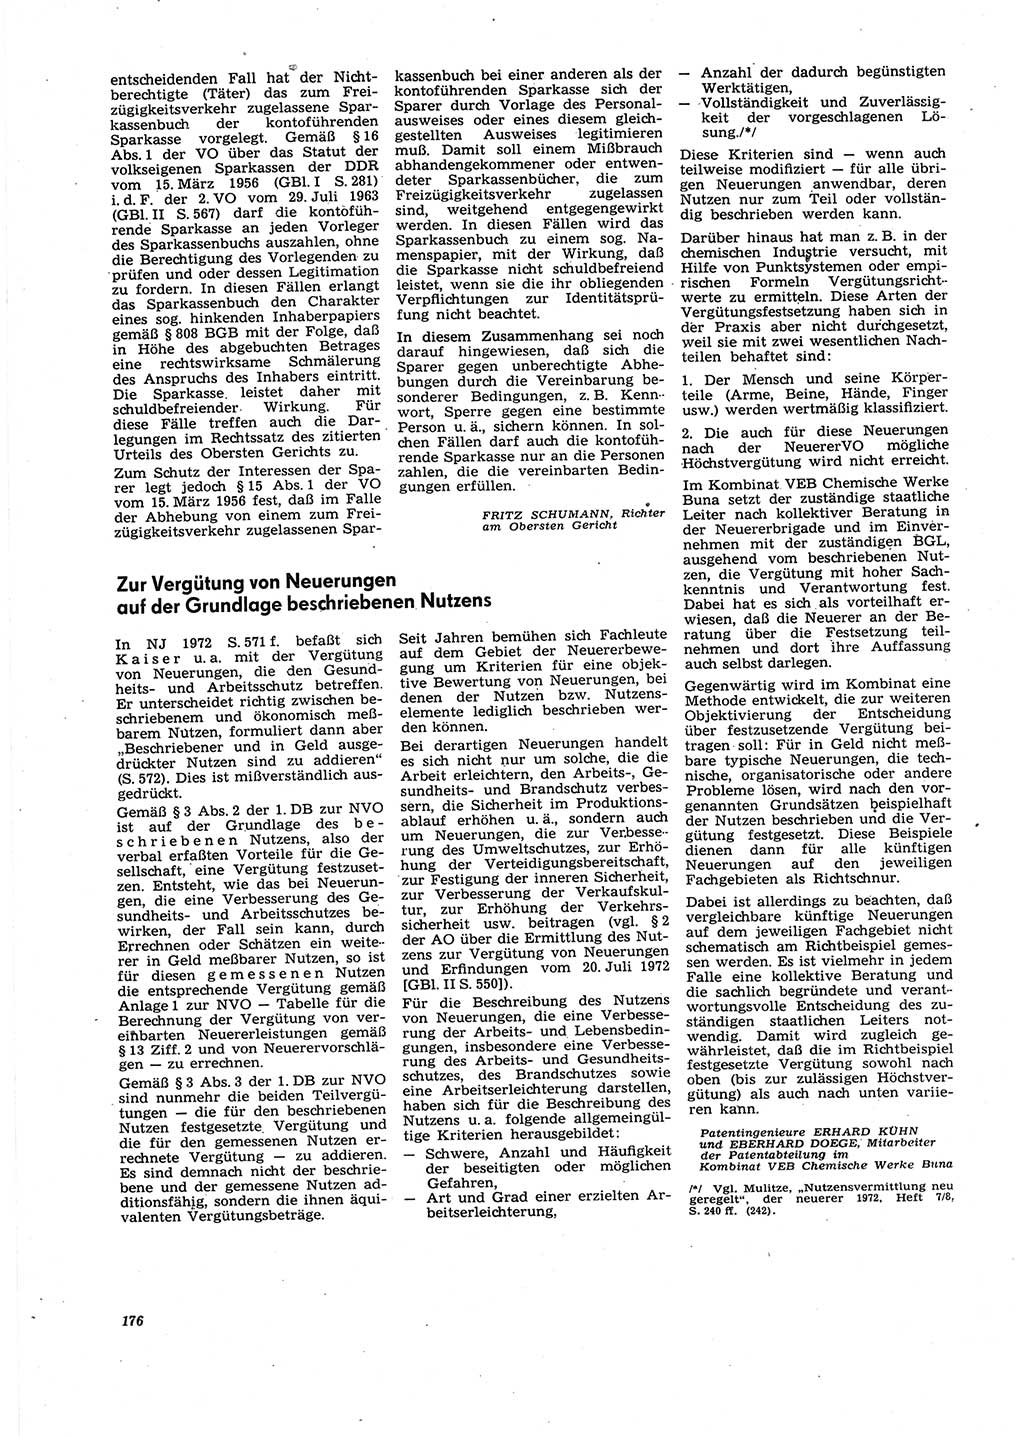 Neue Justiz (NJ), Zeitschrift für Recht und Rechtswissenschaft [Deutsche Demokratische Republik (DDR)], 27. Jahrgang 1973, Seite 176 (NJ DDR 1973, S. 176)